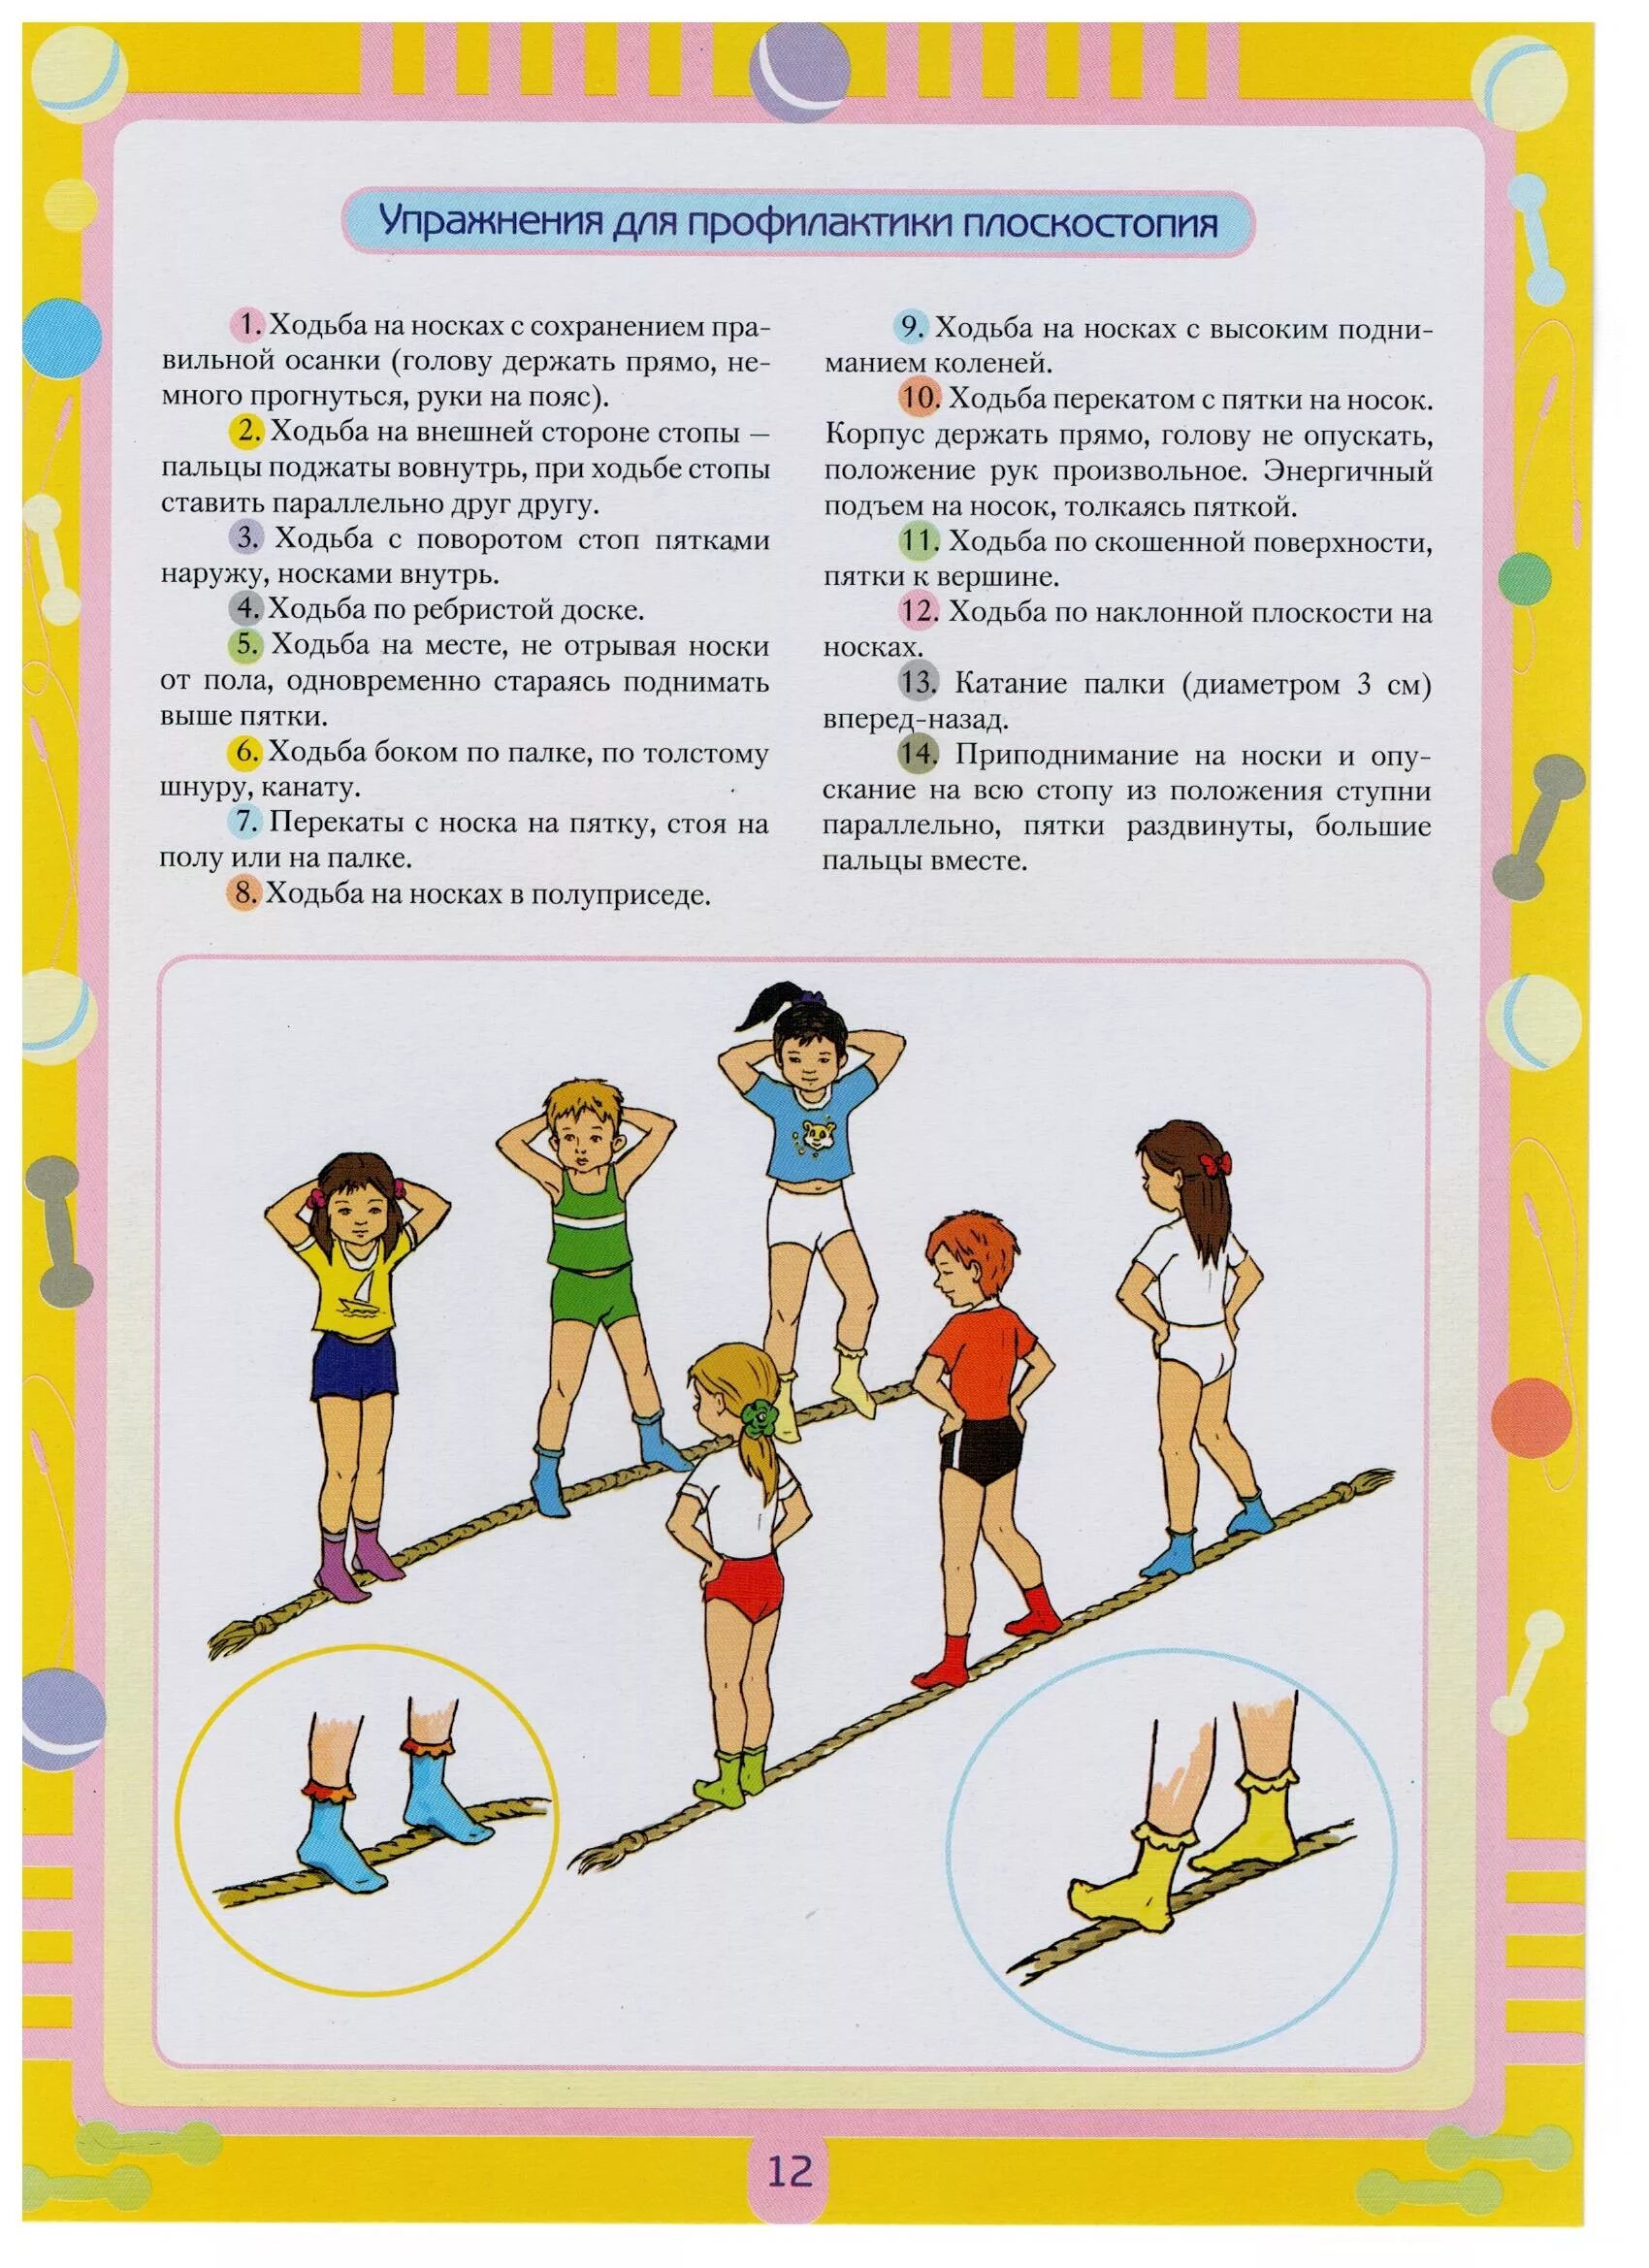 Развитие движений средняя группа. Картотека упражнений по профилактике плоскостопия в детском саду. Рекомендация для осанки и плоскостопия. Профилактика нарушений осанки и плоскостопия у детей. Комплекс гимнастики для профилактики плоскостопия.